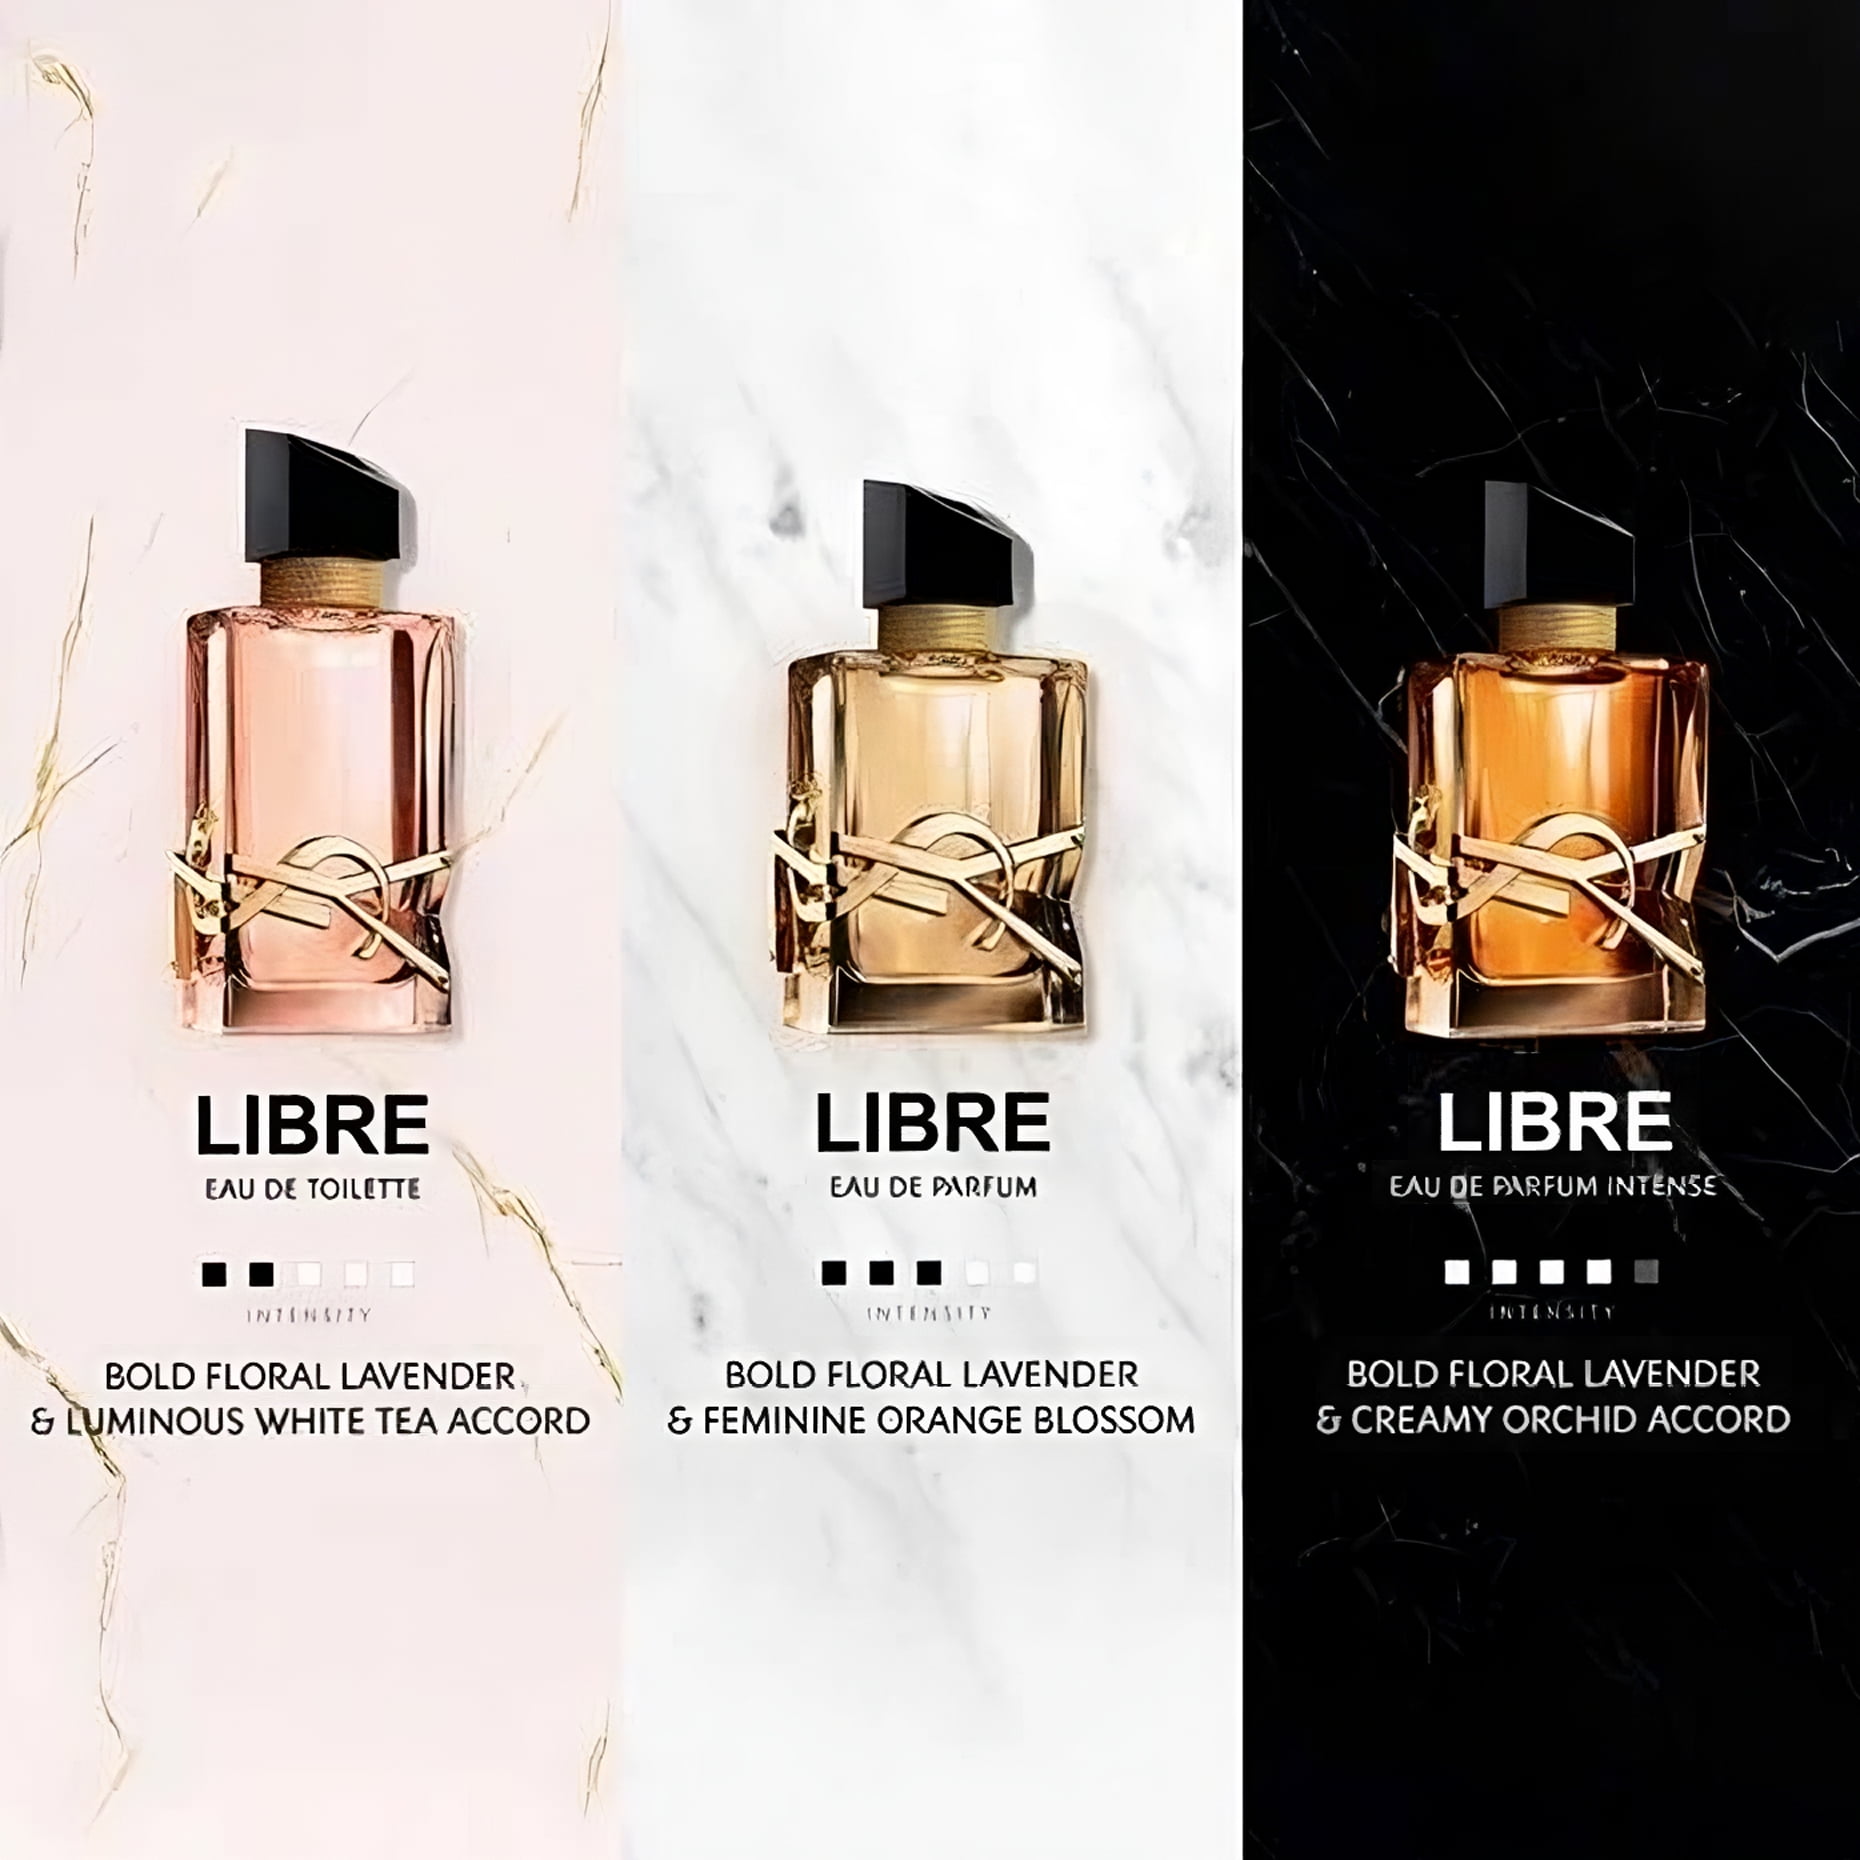 Libre Yves Saint Laurent Eau de Parfum Spray Women 3oz